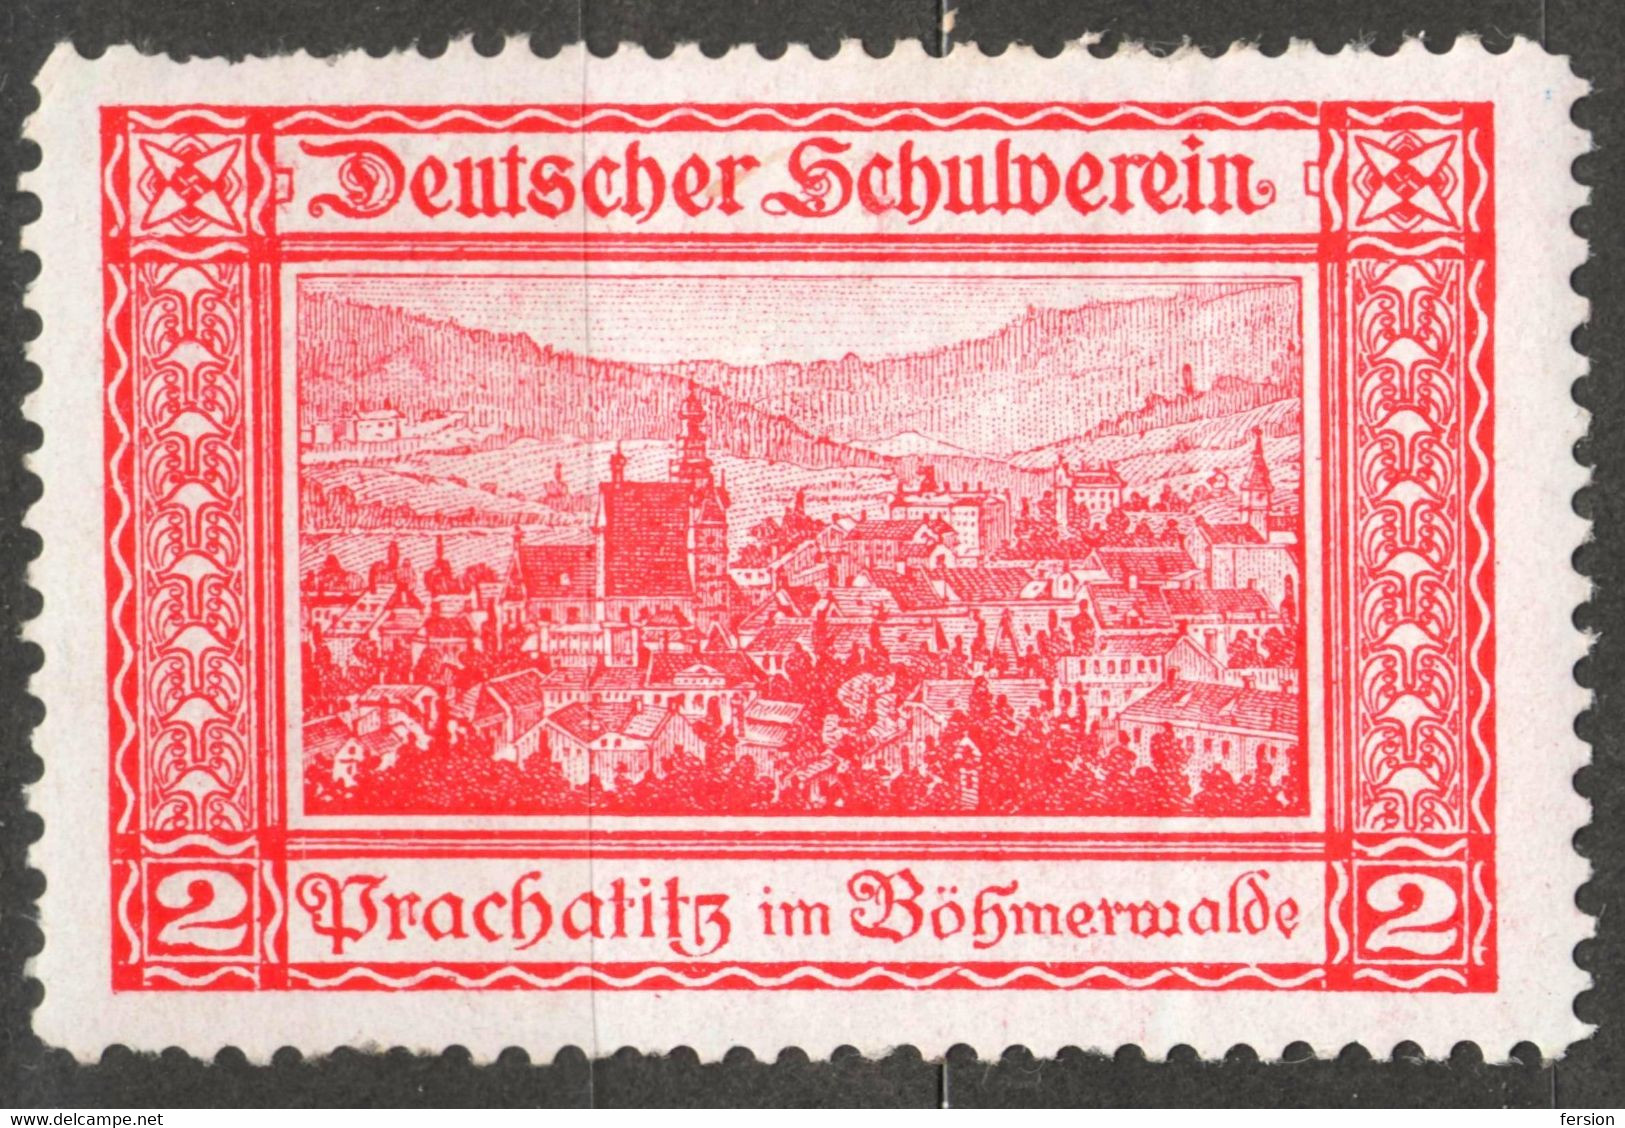 Prachatice Prachatitz CATHEDRAL Czechia Bohemia Germany Austria Label Cinderella Vignette SCHOOL Deutscher Schulverein - ...-1918 Préphilatélie